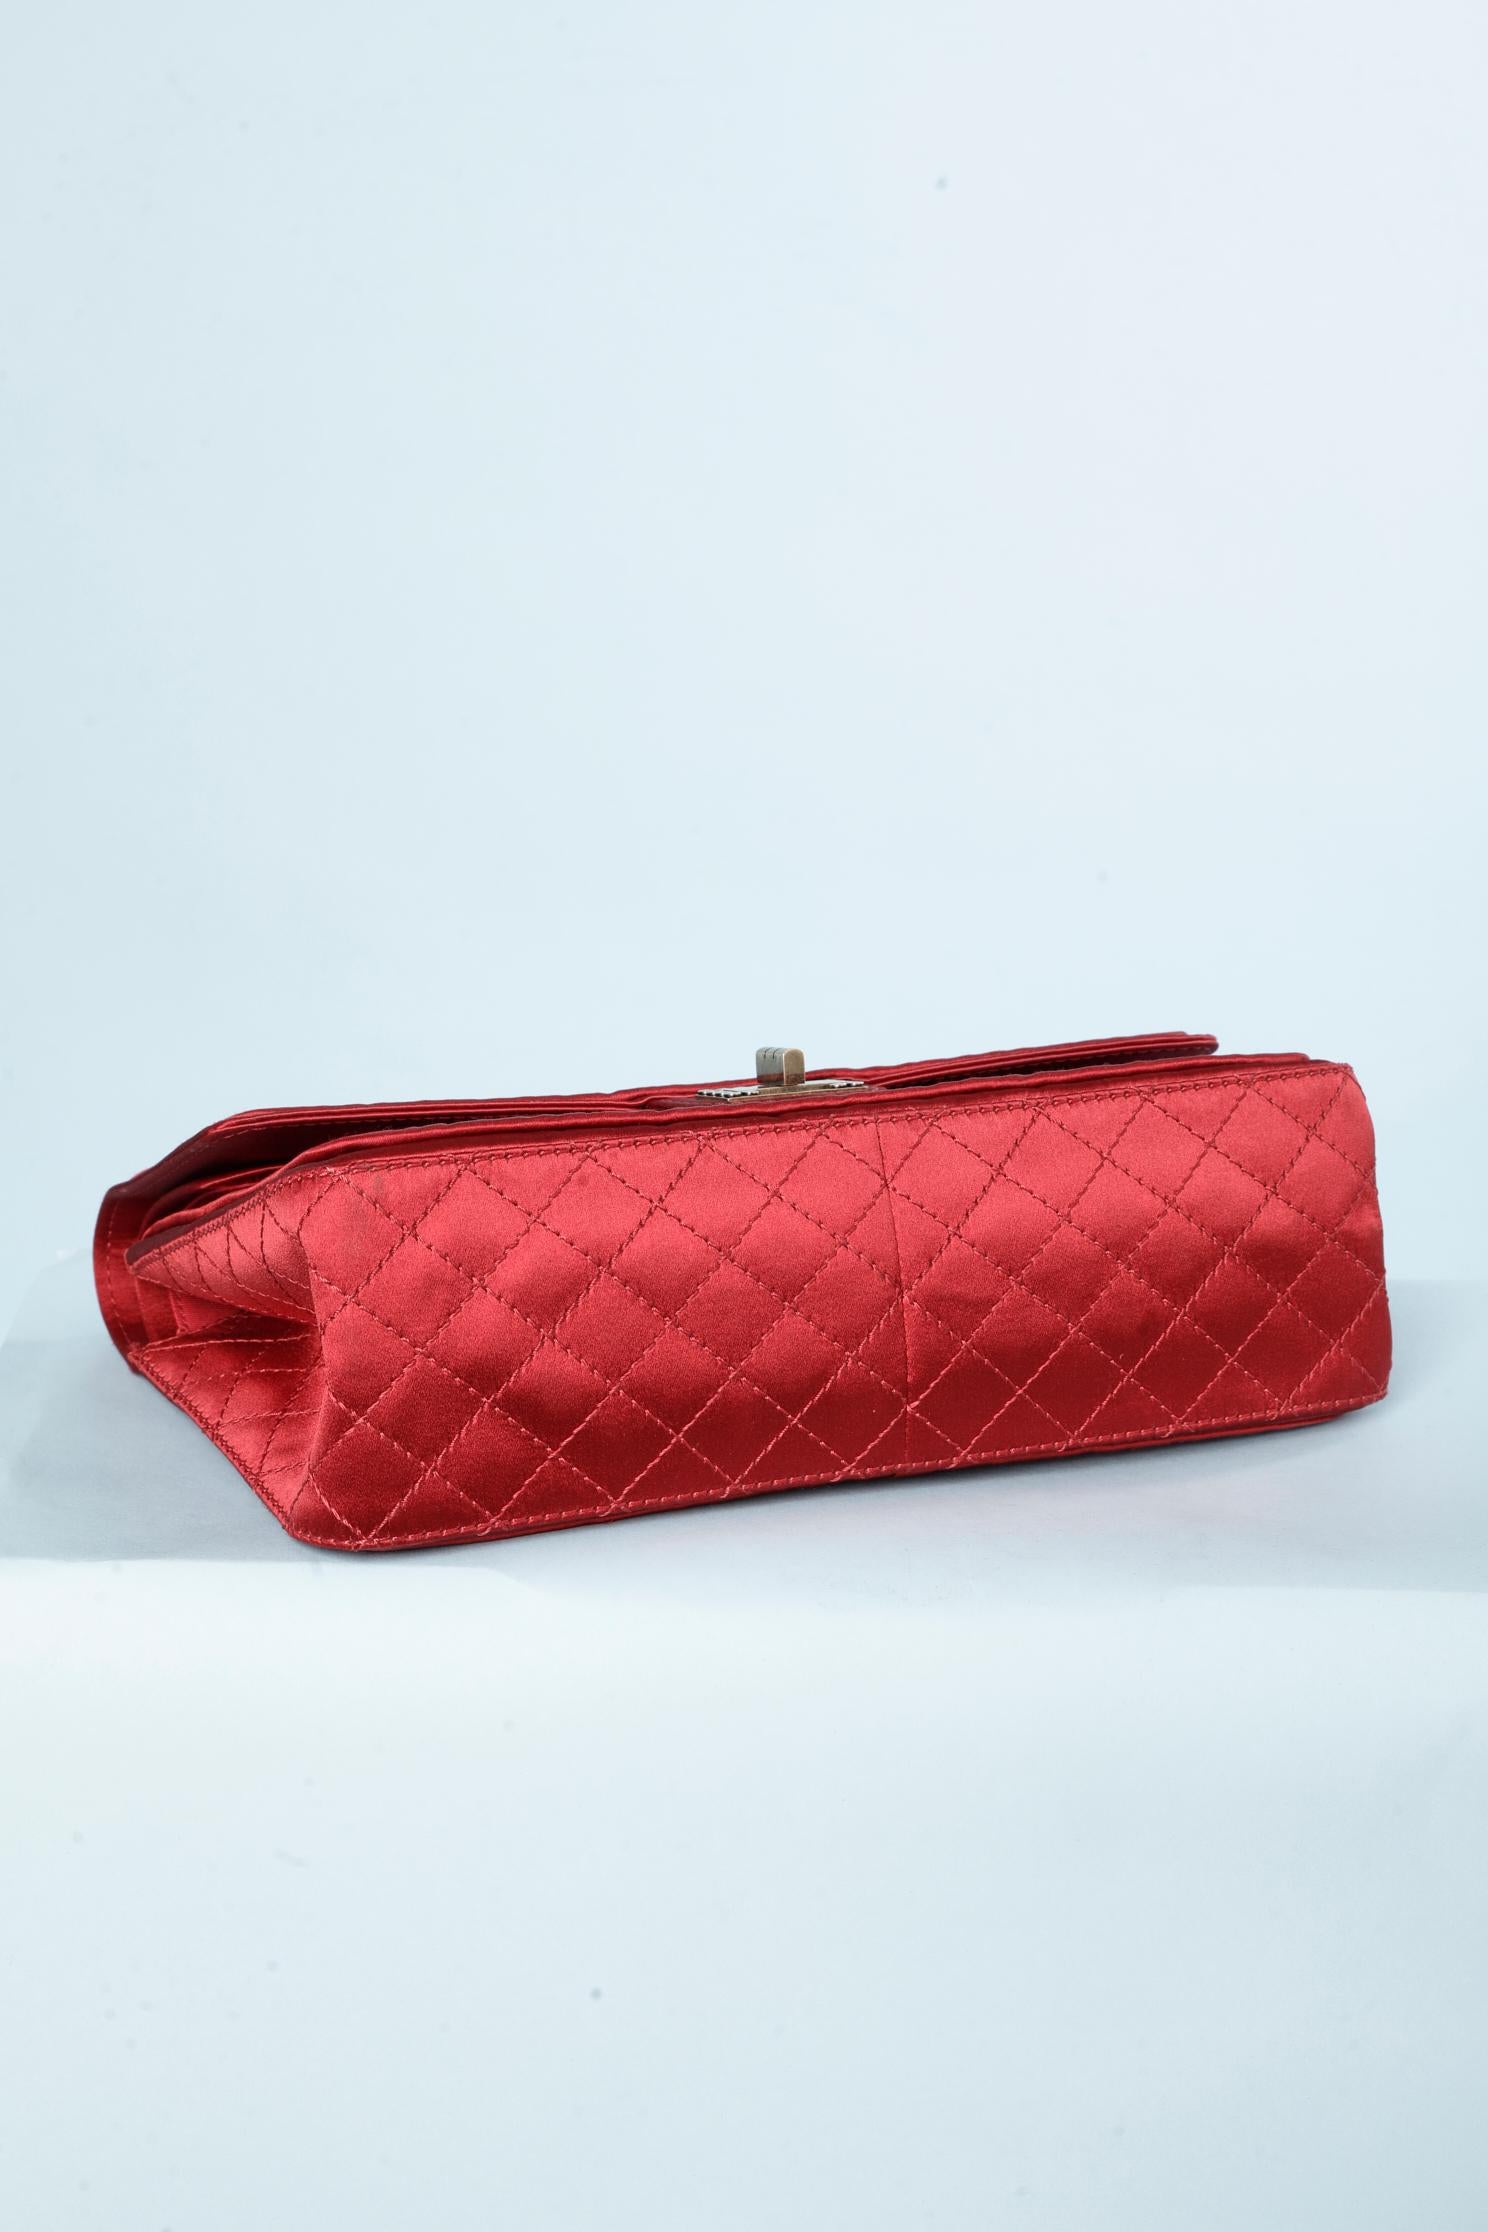 Satin Ruby Chanel bag Collection Paris-Shangai Métiers d'Arts 2011 For Sale 4